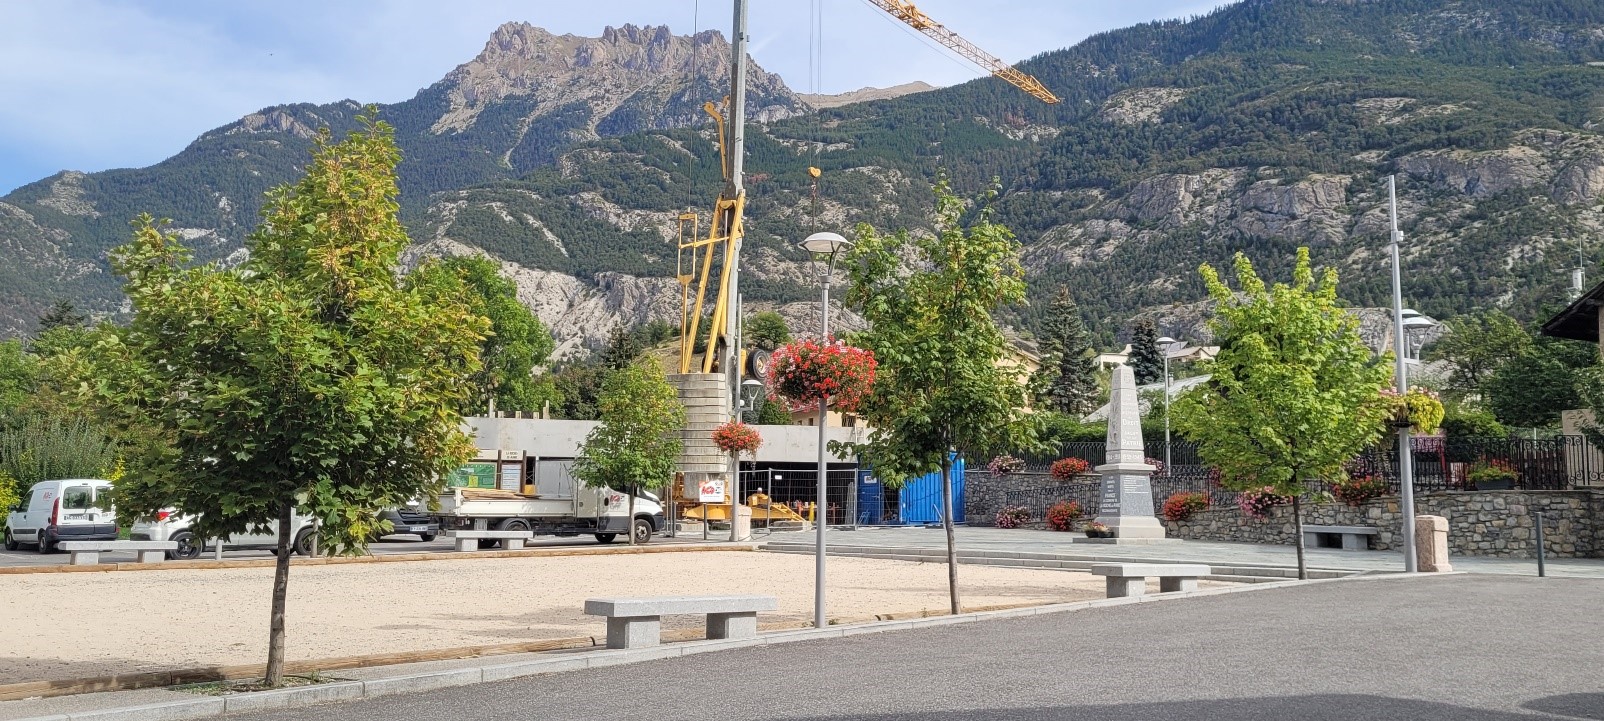 Dans les Hautes Alpes, aux portes du Pays des Écrins, la commune de La Roche de Rame vous propose la location d'un commerce de proximité multiservices.

Bâtiment neuf de plain-pied avec un grand linéaire de vitrines et une belle terrasse.

Situé à côté d'un jeu de boules et de nombreuses places de parking au bord de la seule route nationale qui traverse le département.